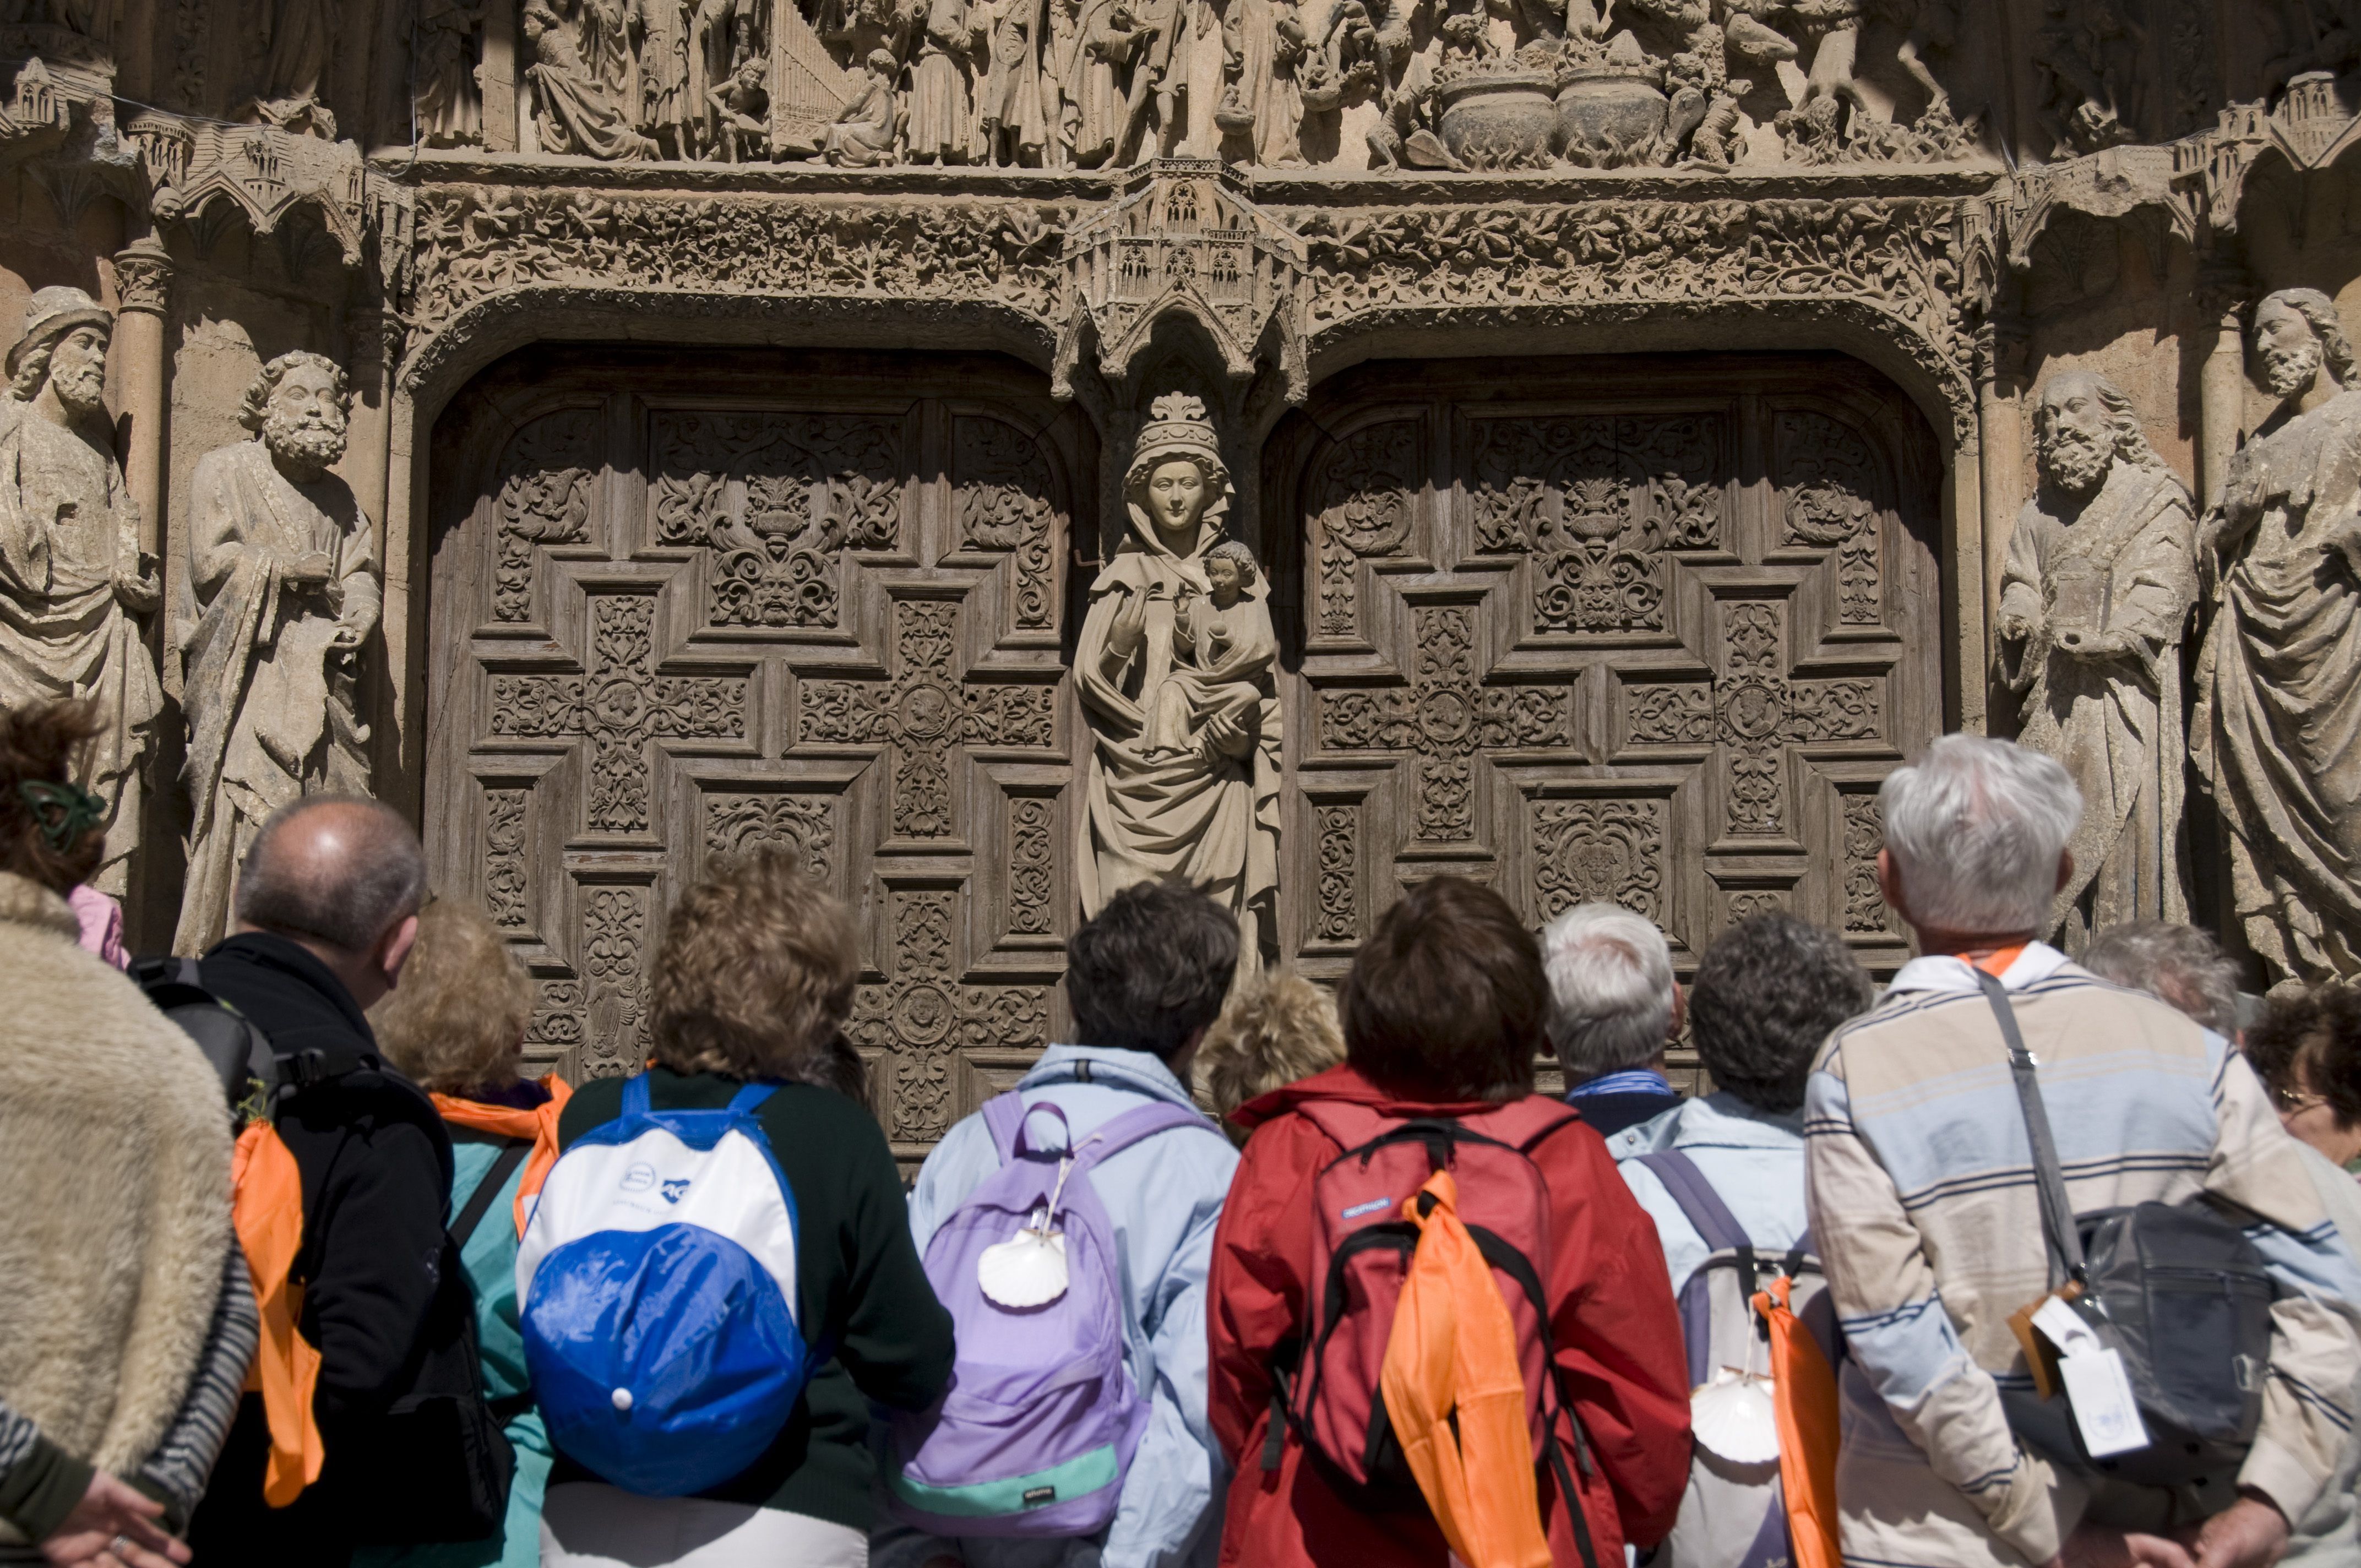 Un grupo de turistas contempla la fachada de la Catedral de León en una imagen de archivo. Mauricio peña